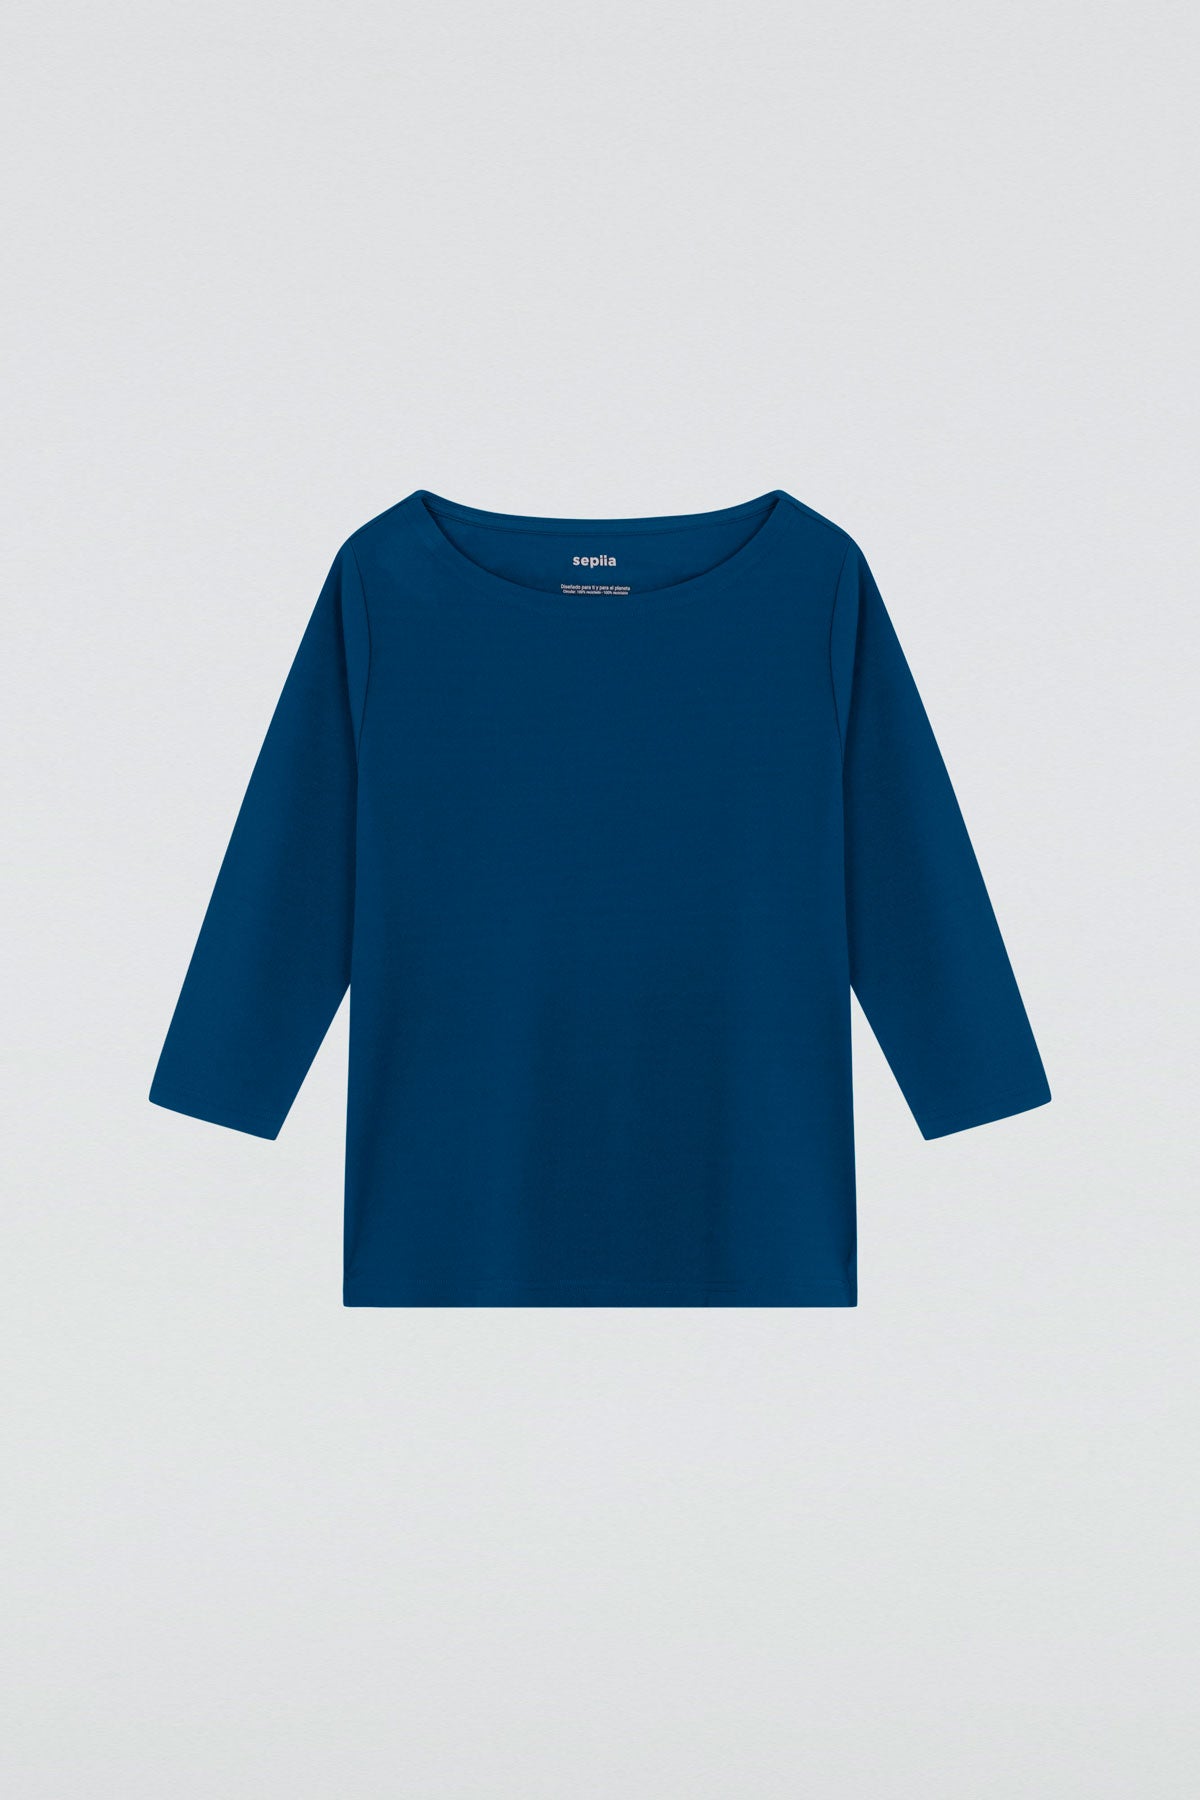 Camiseta para mujer con manga 3/4 y escote barco en color azul tormenta. Prenda básica perfecta para cualquier ocasión. Foto plano